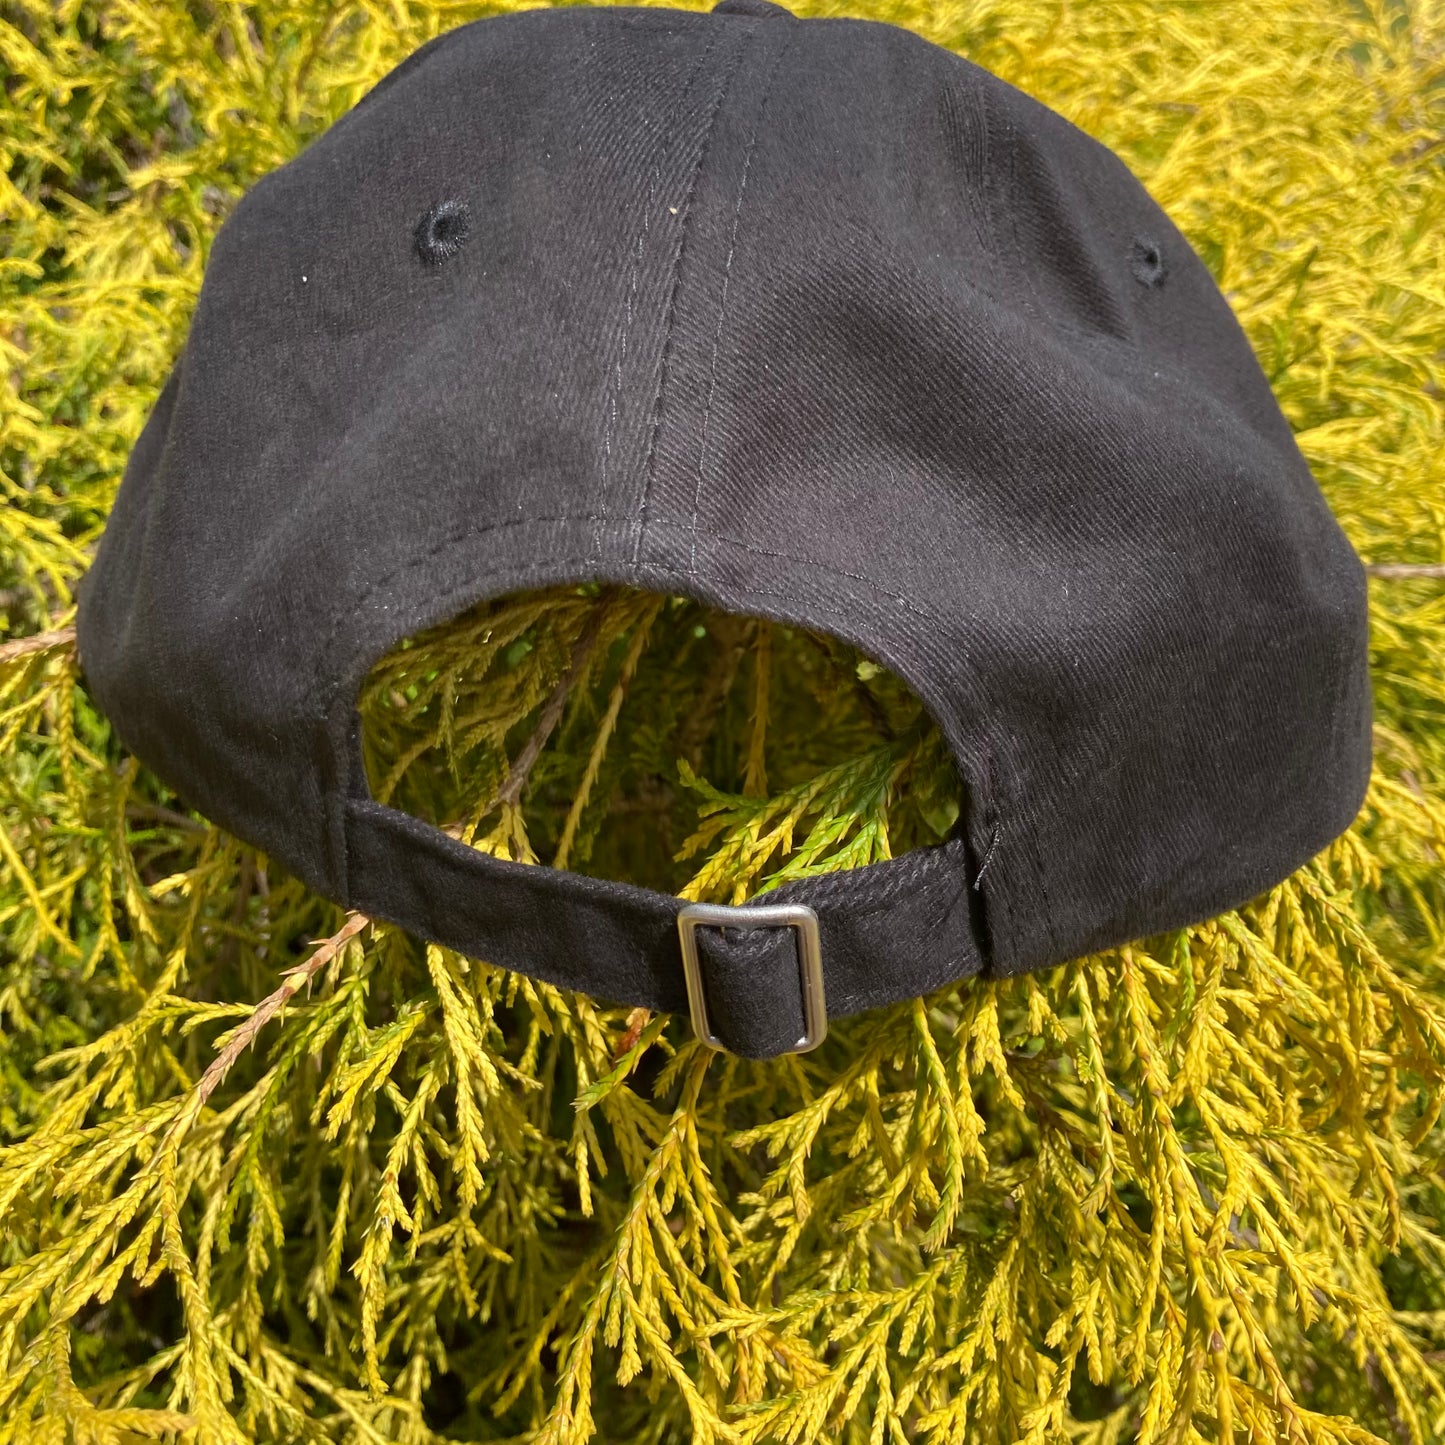 IMPREC Embroidered Logo Hat - Black or Tan